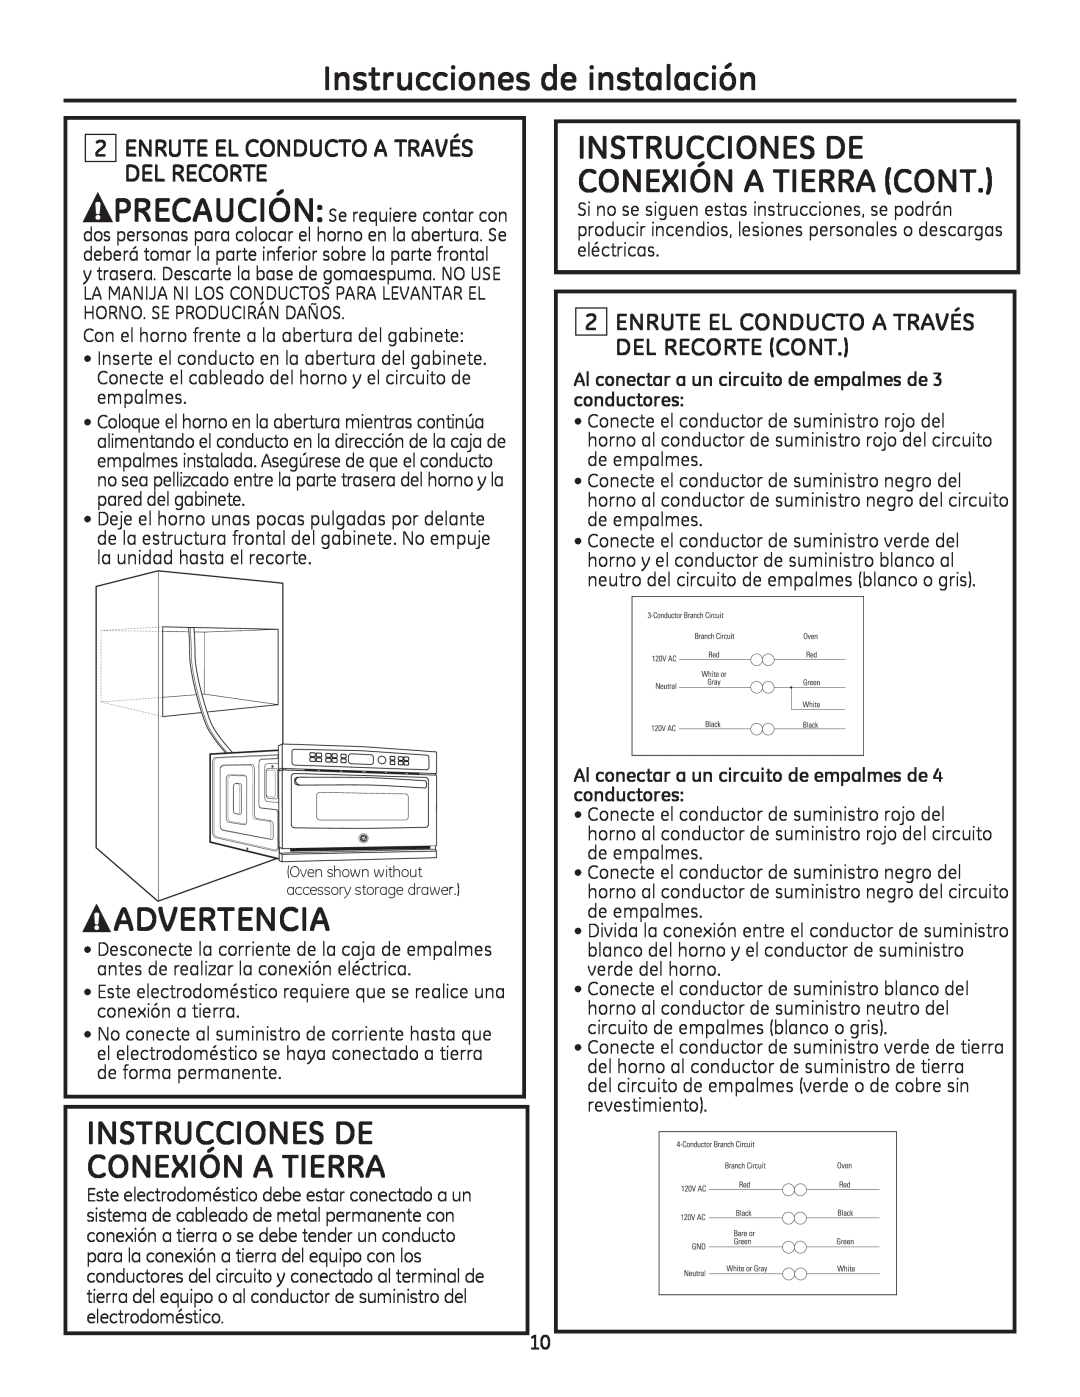 GE Monogram ZSC2200 Instrucciones De Conexión A Tierra Cont, Enrute El Conducto A Través Del Recorte, Advertencia 